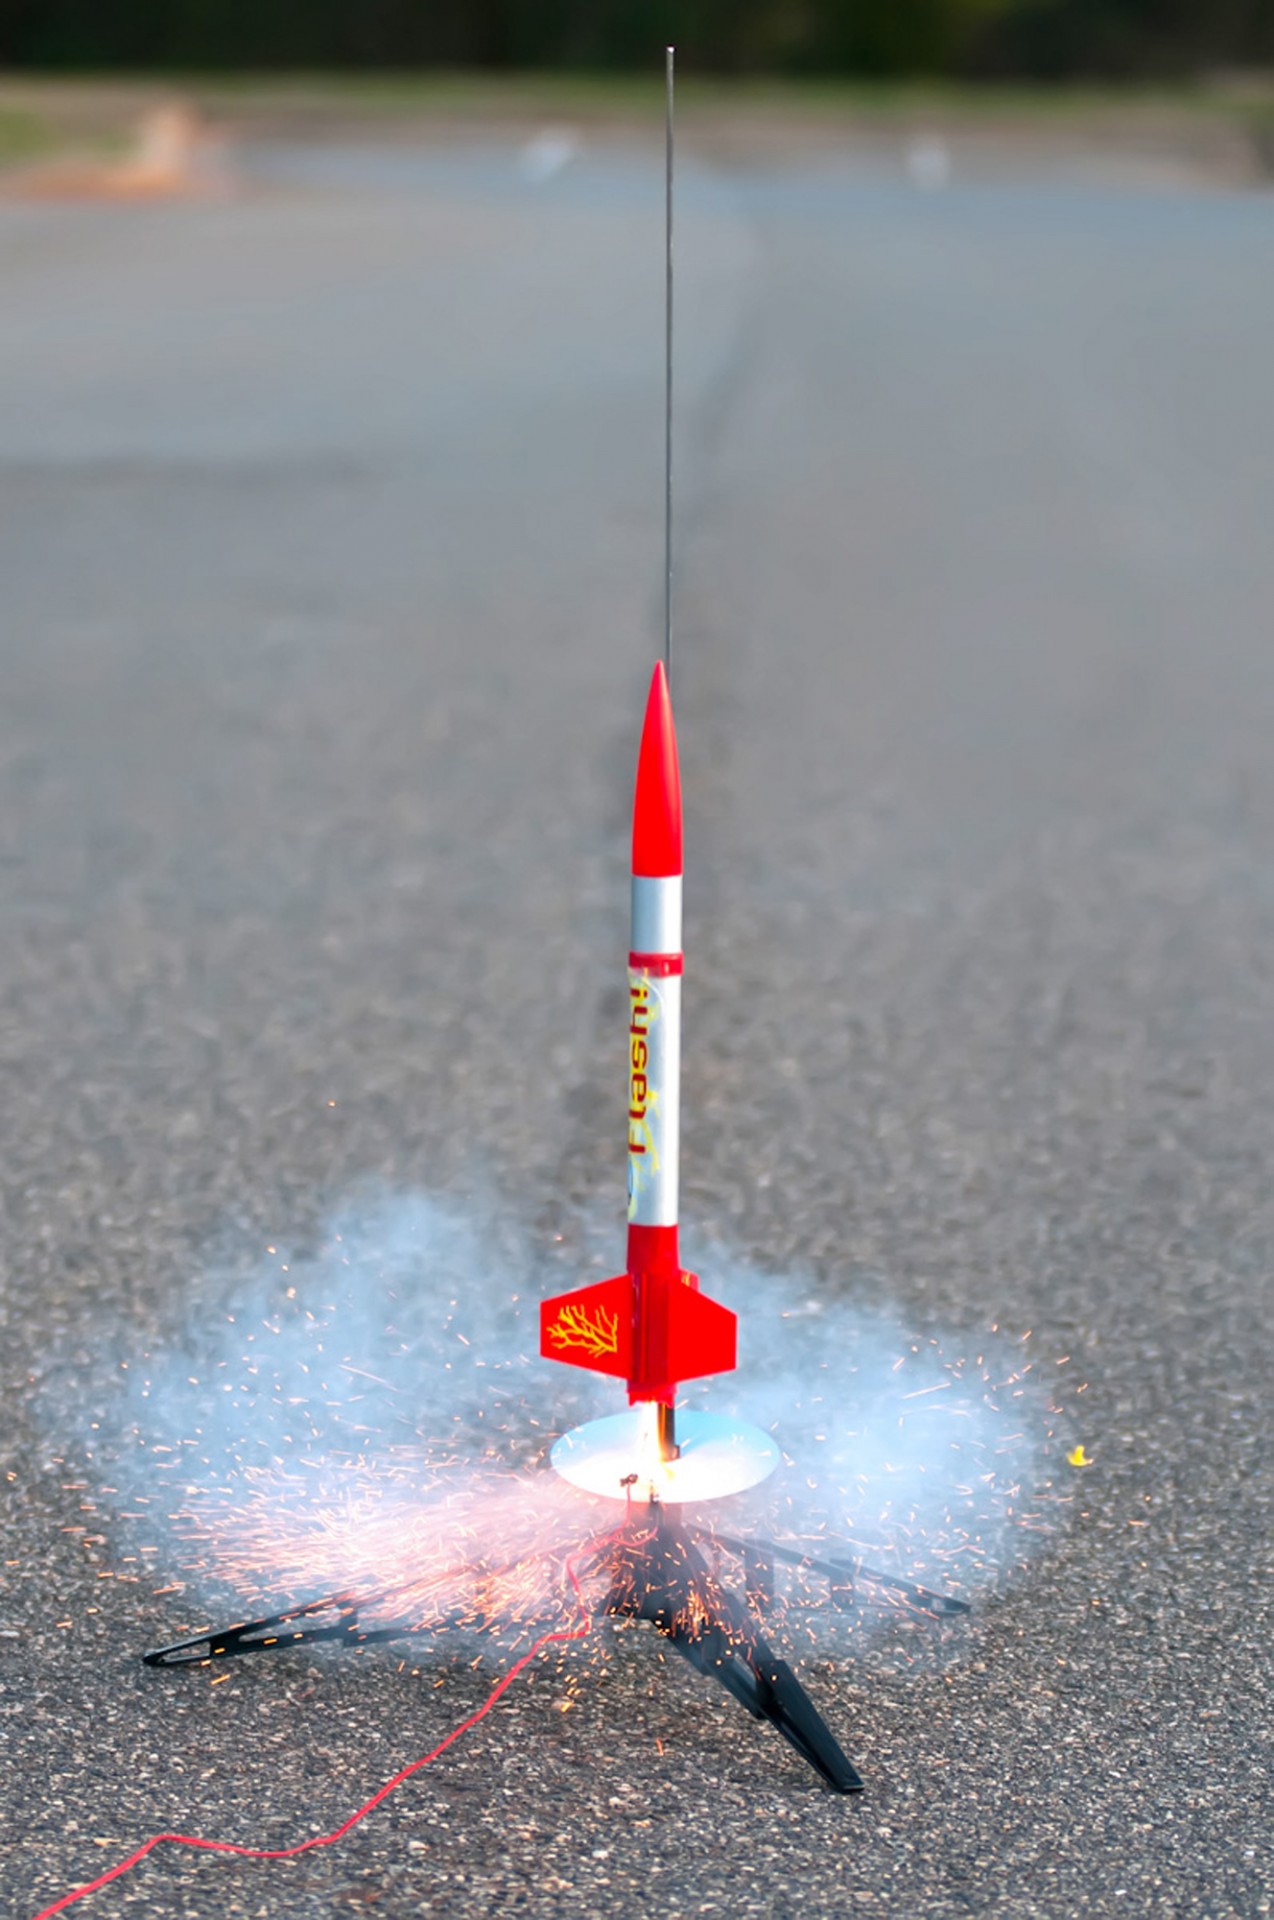 hobby rocket model free photo